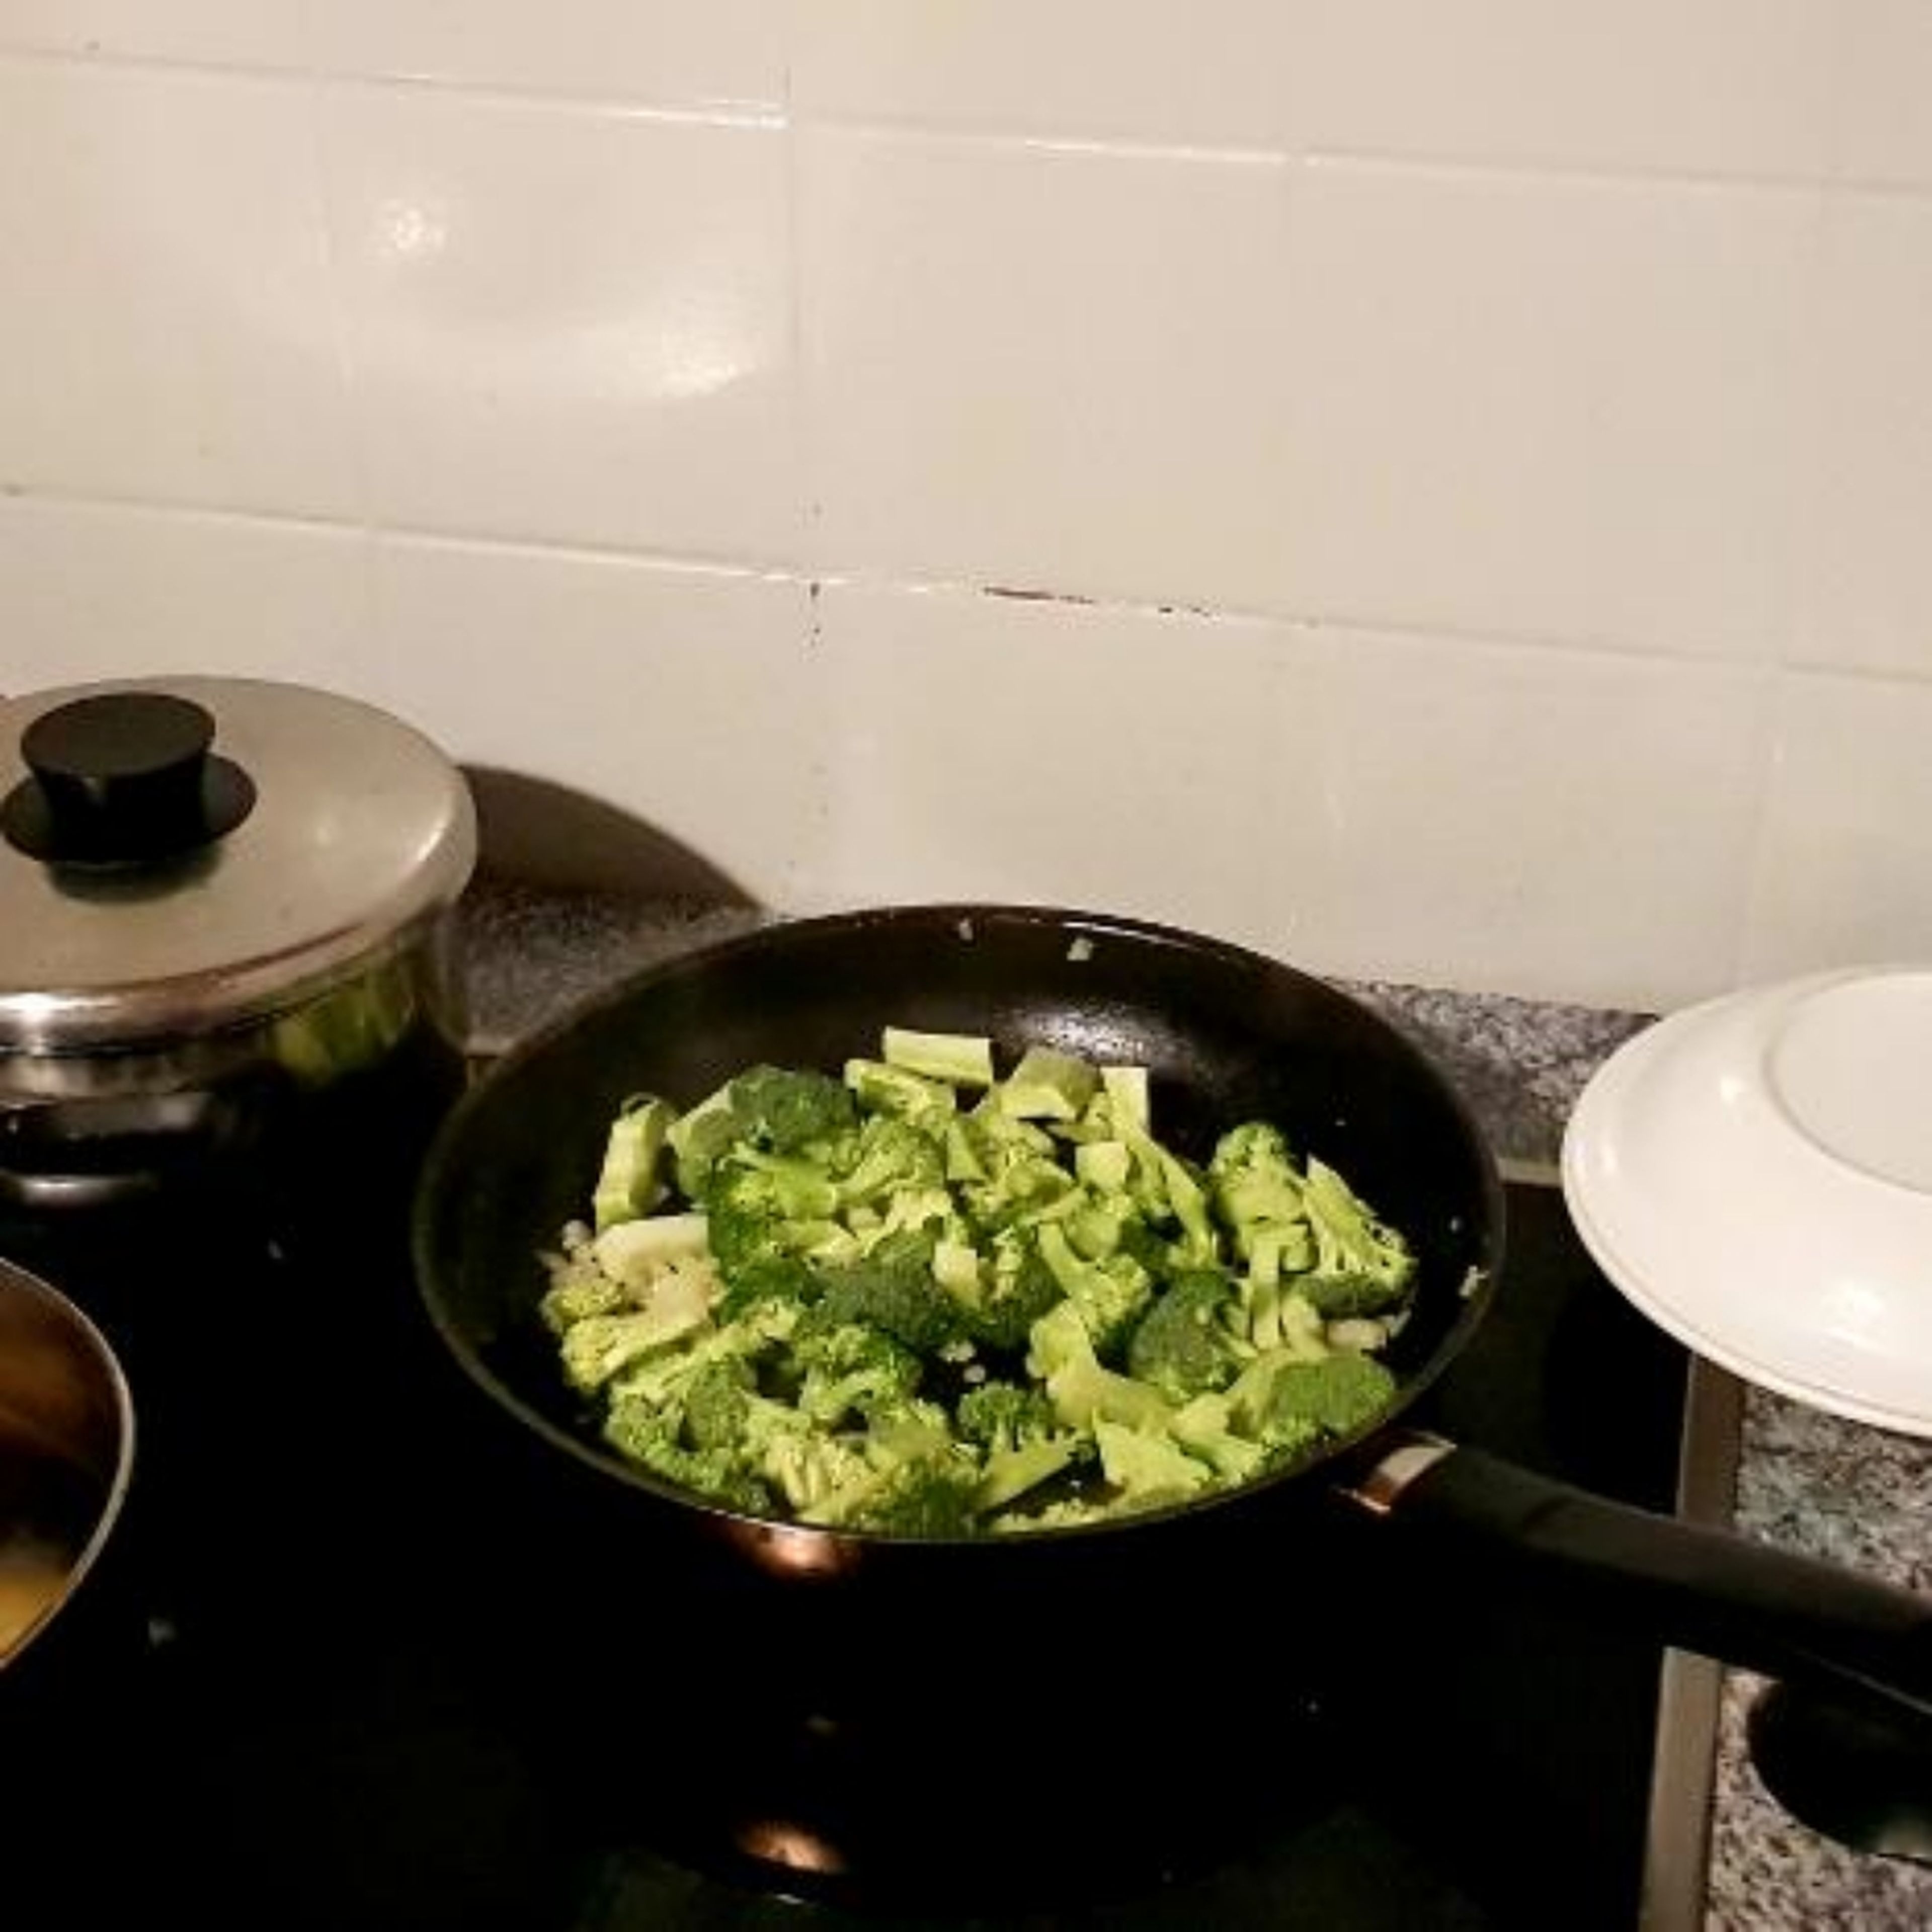 Den Brokkoli in Röschen teilen, das holzige vom Stiel abschneiden und den Rest in Stifte schneiden. Die Zwiebel schälen und zusammen mit dem Tofu in kleine Würfel schneiden.